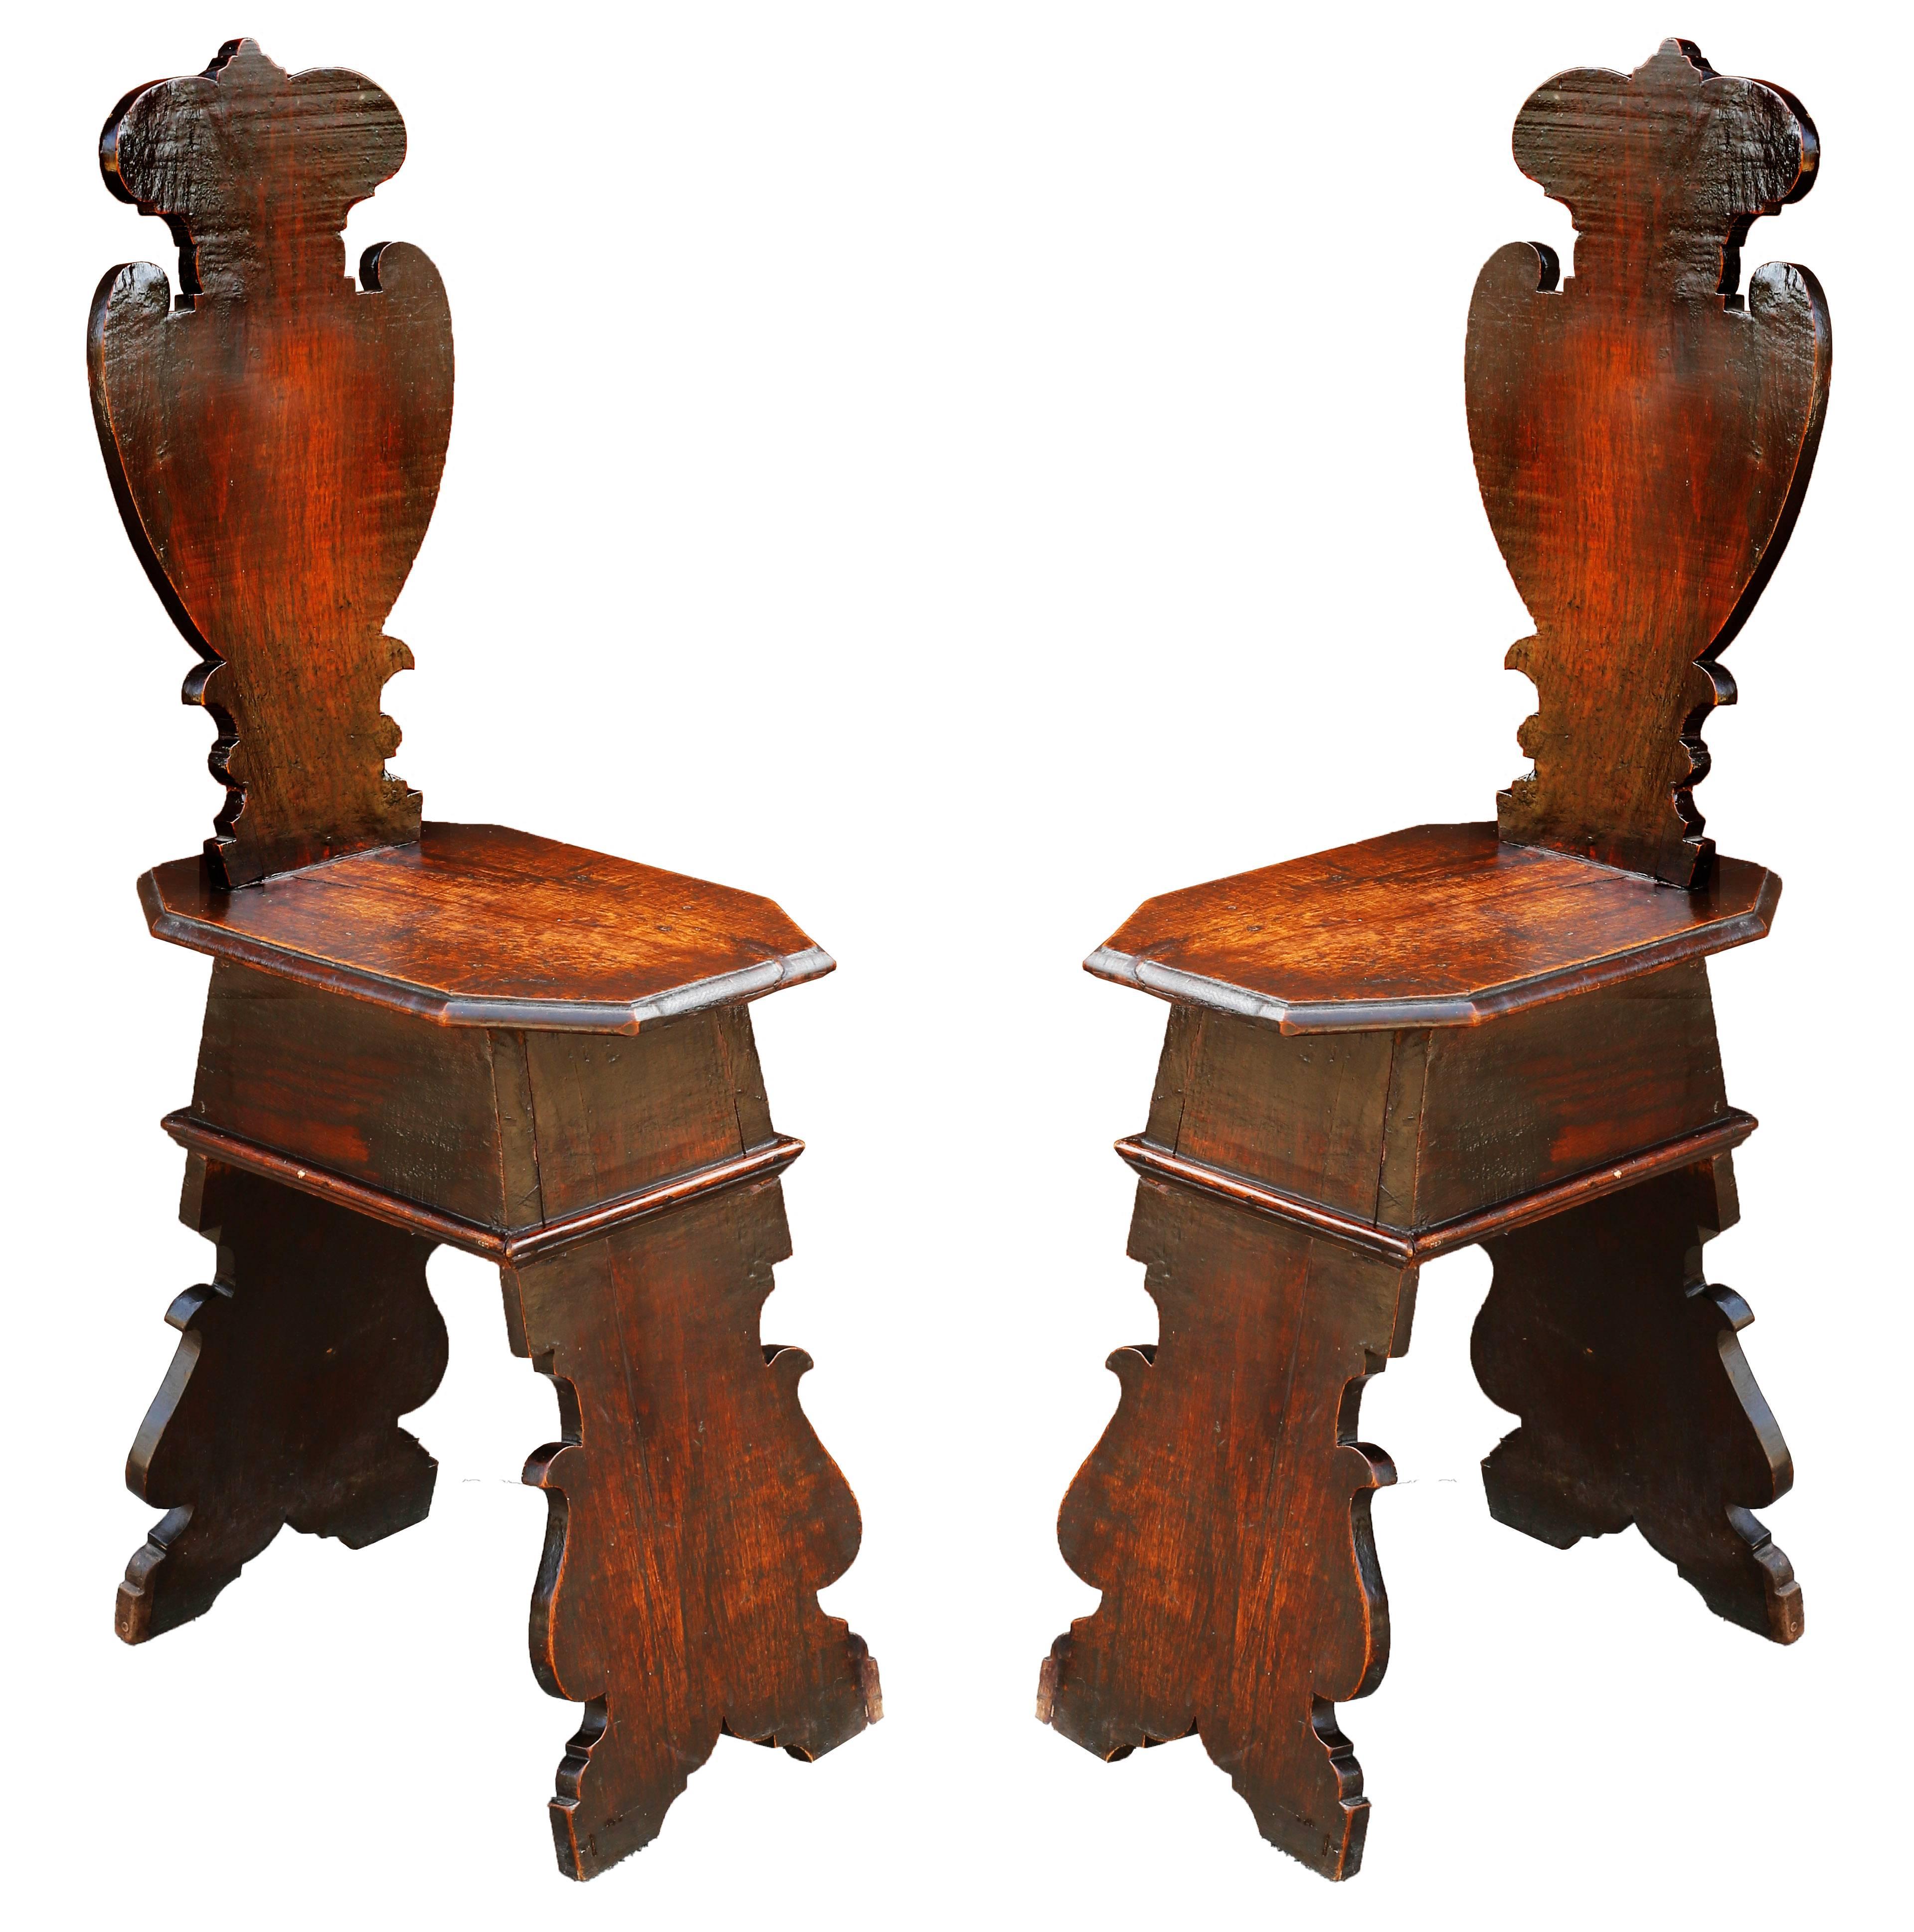 Remarquable paire de chaises de salle en chêne et en noyer d'après les modèles de la Renaissance italienne qui ont été adaptés par les Anglais au début du XVIIIe siècle. Cette forme de tabouret décoratif était simplement constituée de planches, mais